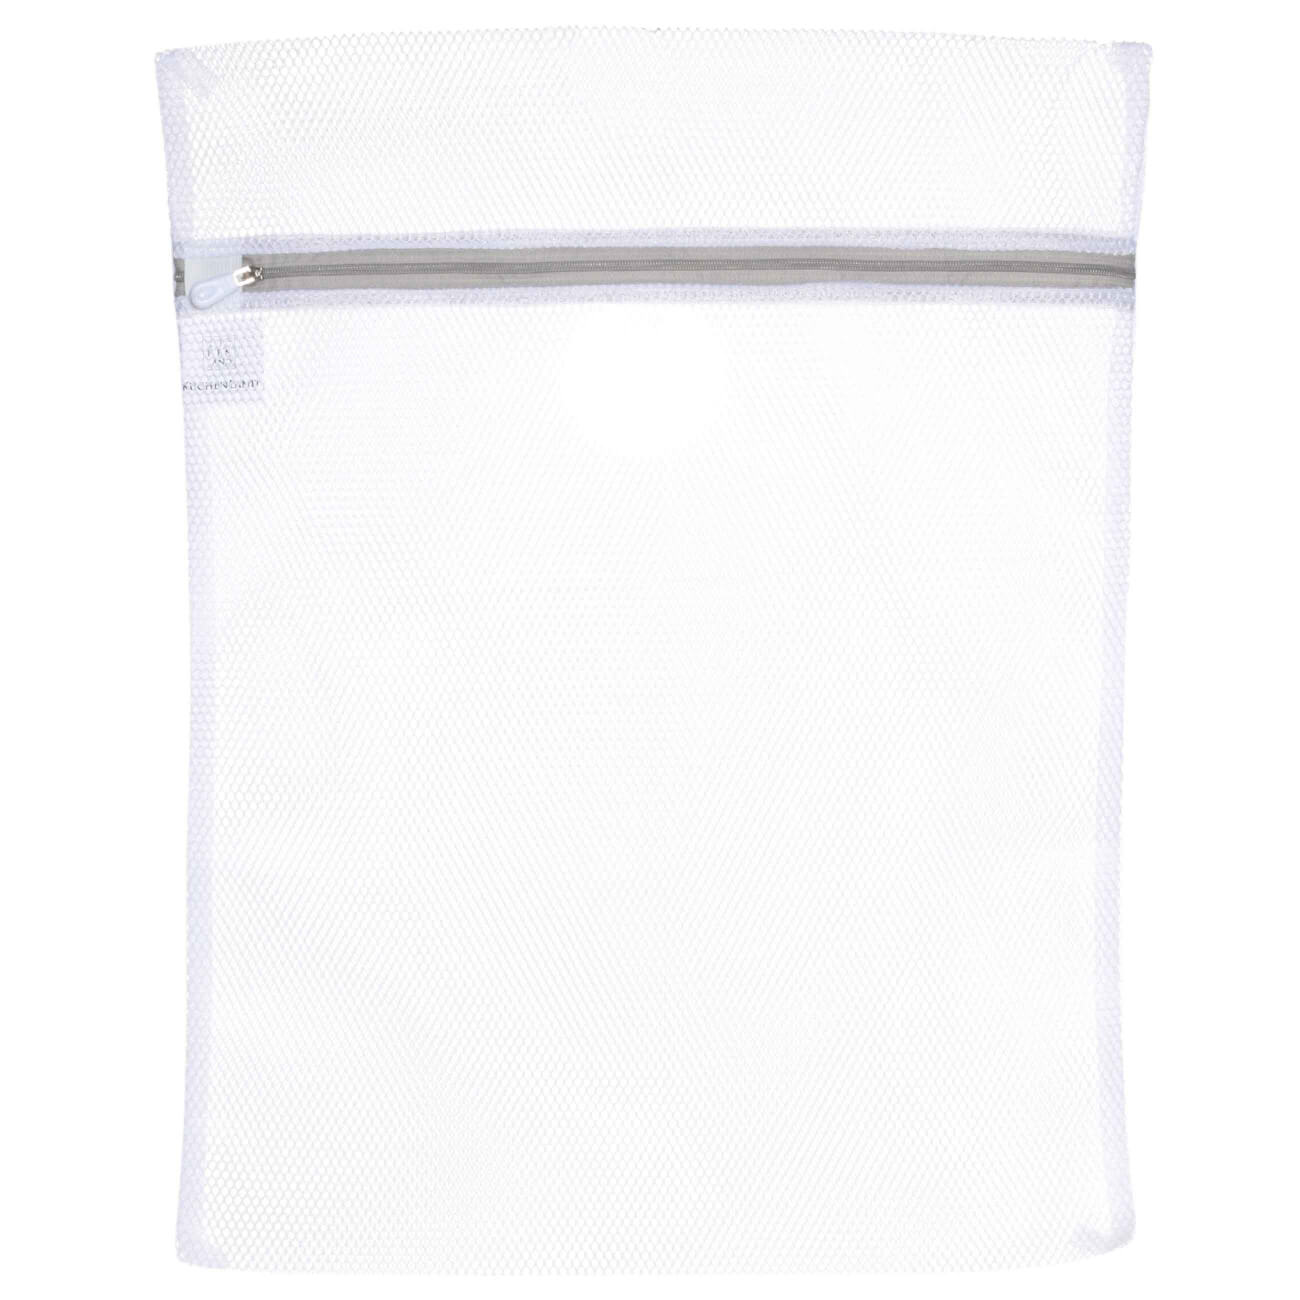 Мешок для стирки одежды, 40х50 см, полиэстер, бело-серый, Safety мешок для стирки нижнего белья 25х30 см полиэстер бело серый safety